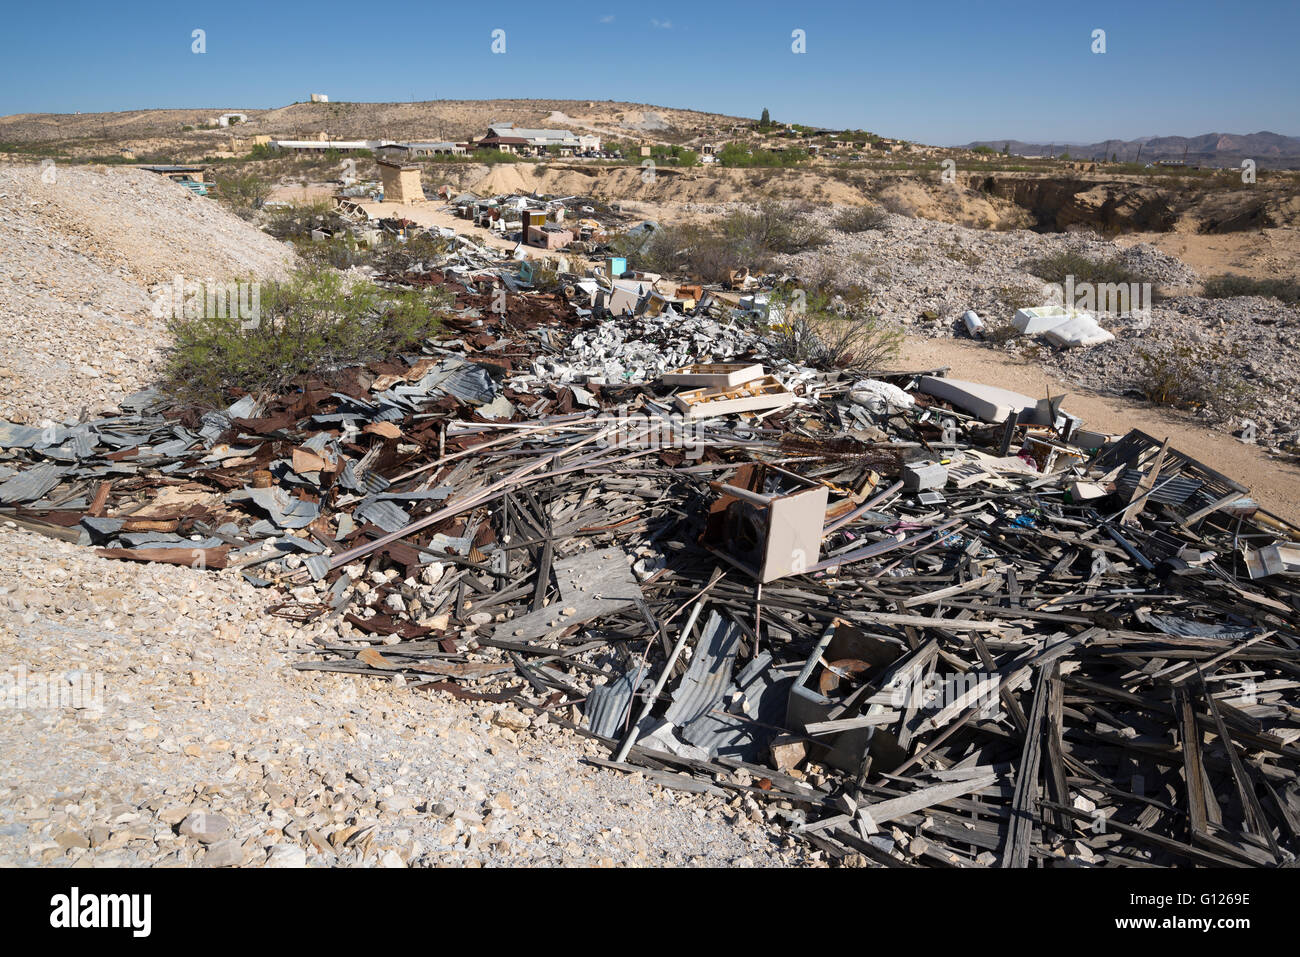 Discarica di rifiuti nella città fantasma di Terlingua, Texas Foto Stock